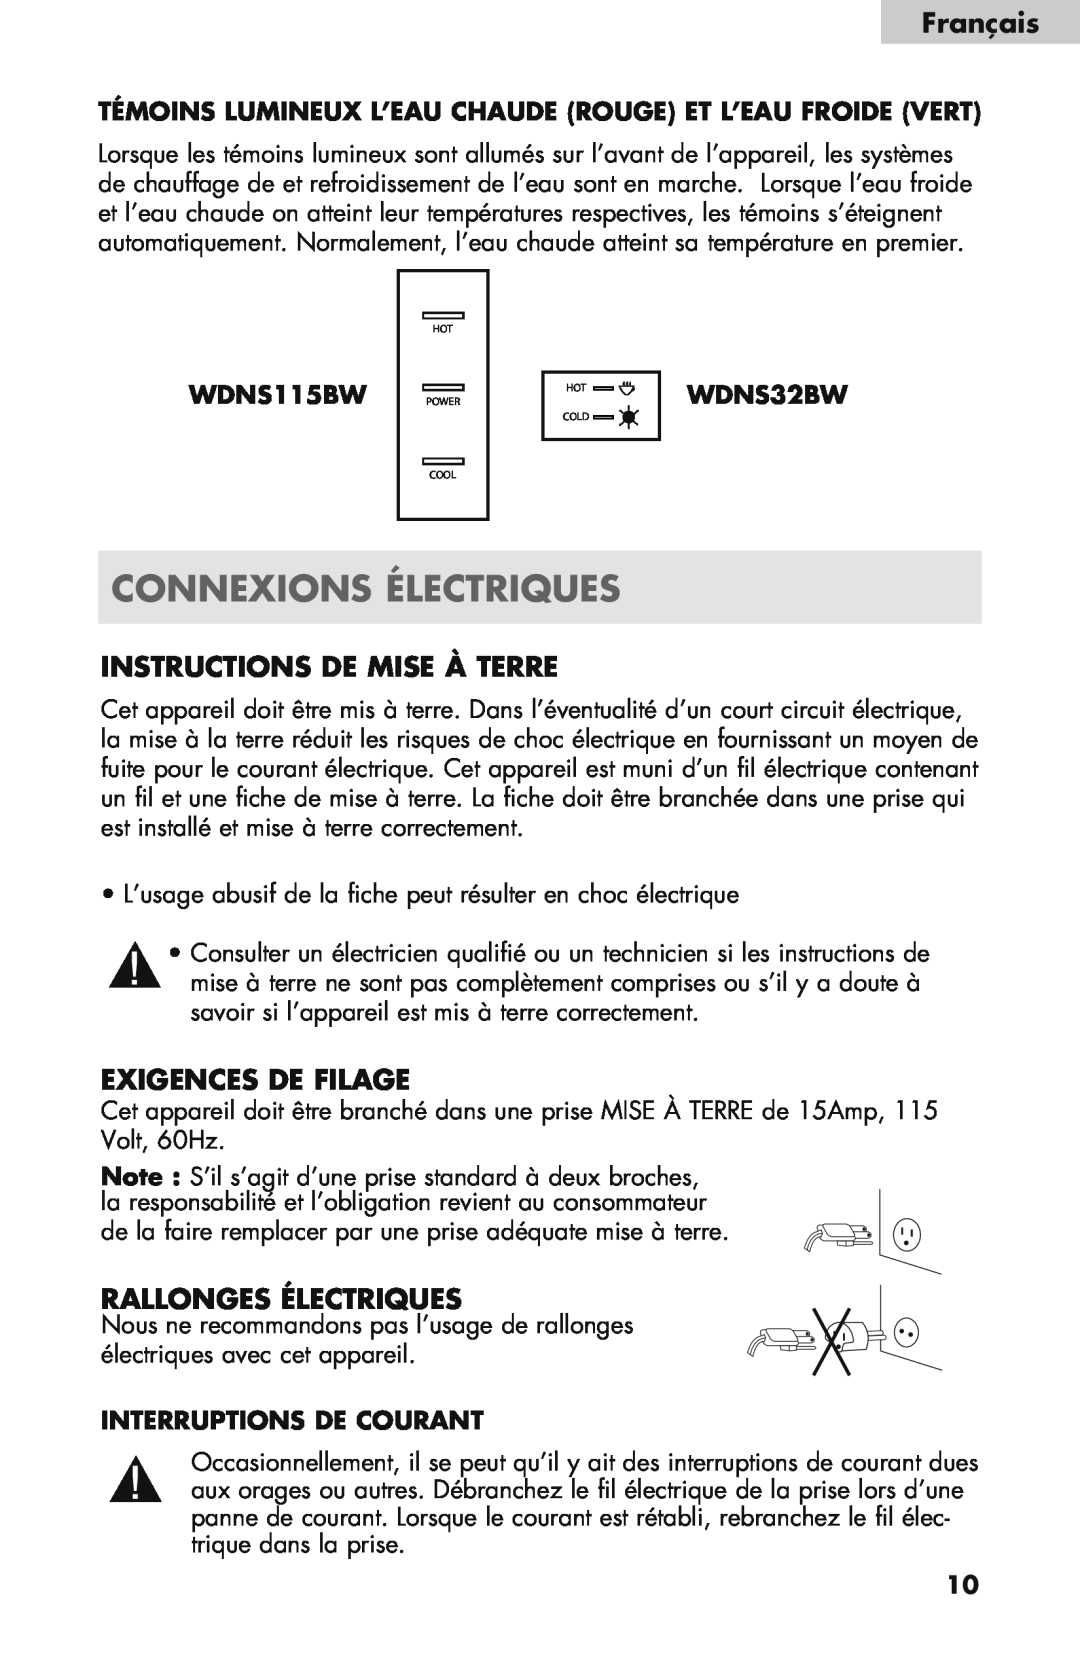 Haier WDNS121SS Connexions Électriques, Instructions De Mise À Terre, Exigences De Filage, Rallonges Électriques, Français 